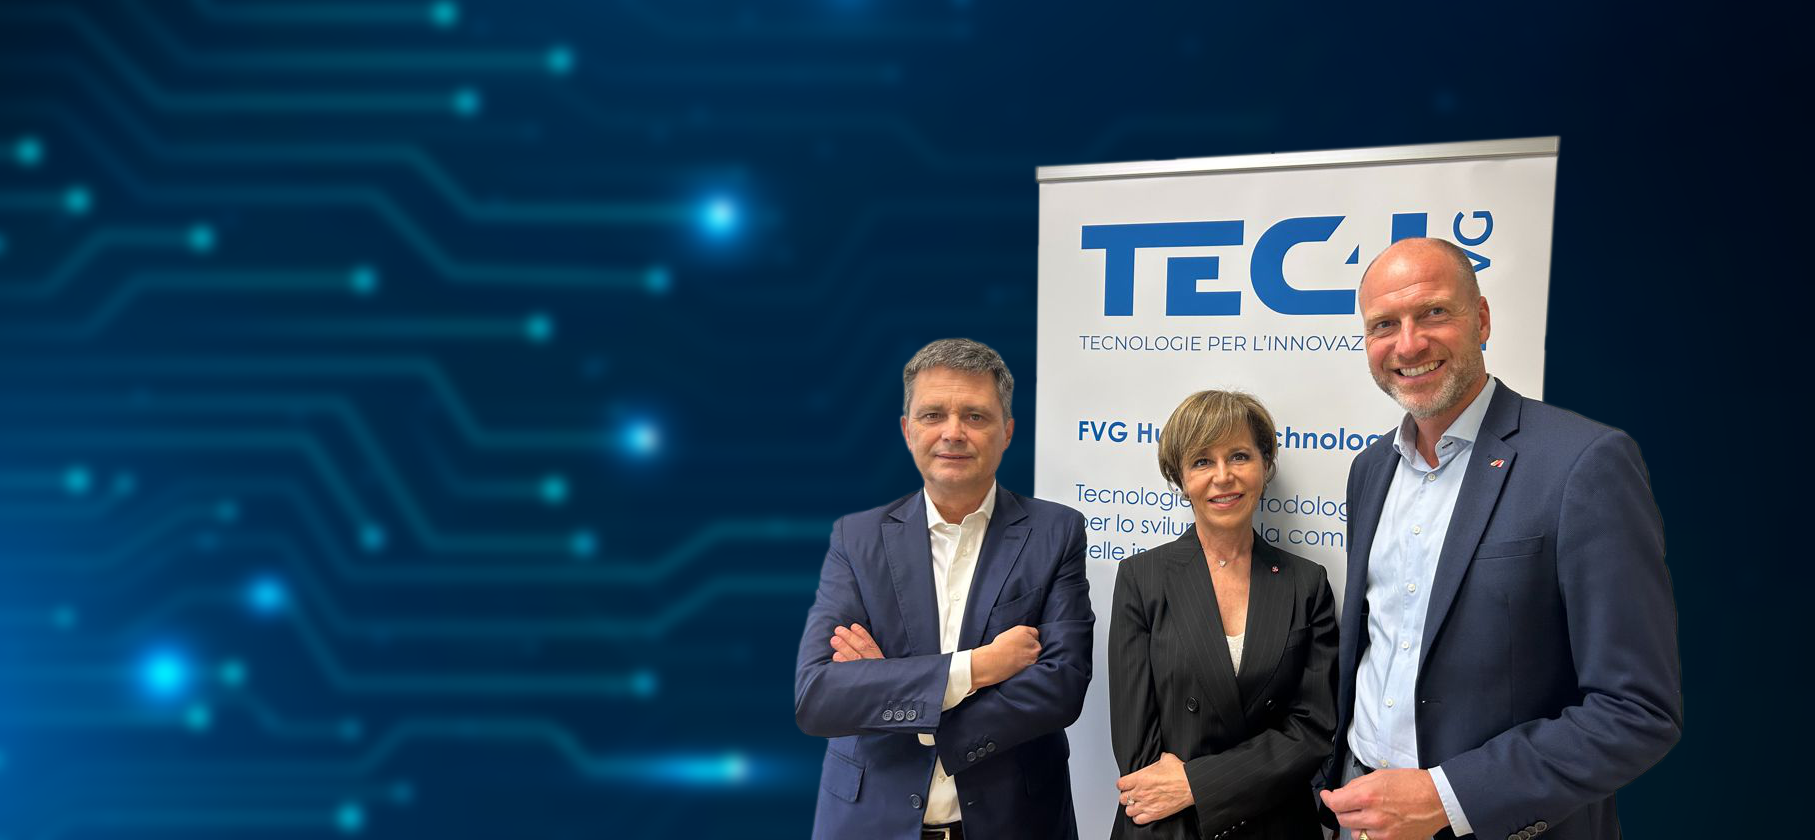 Al via una collaborazione tra TEC4I FVG e ADVANTAGE AUSTRIA